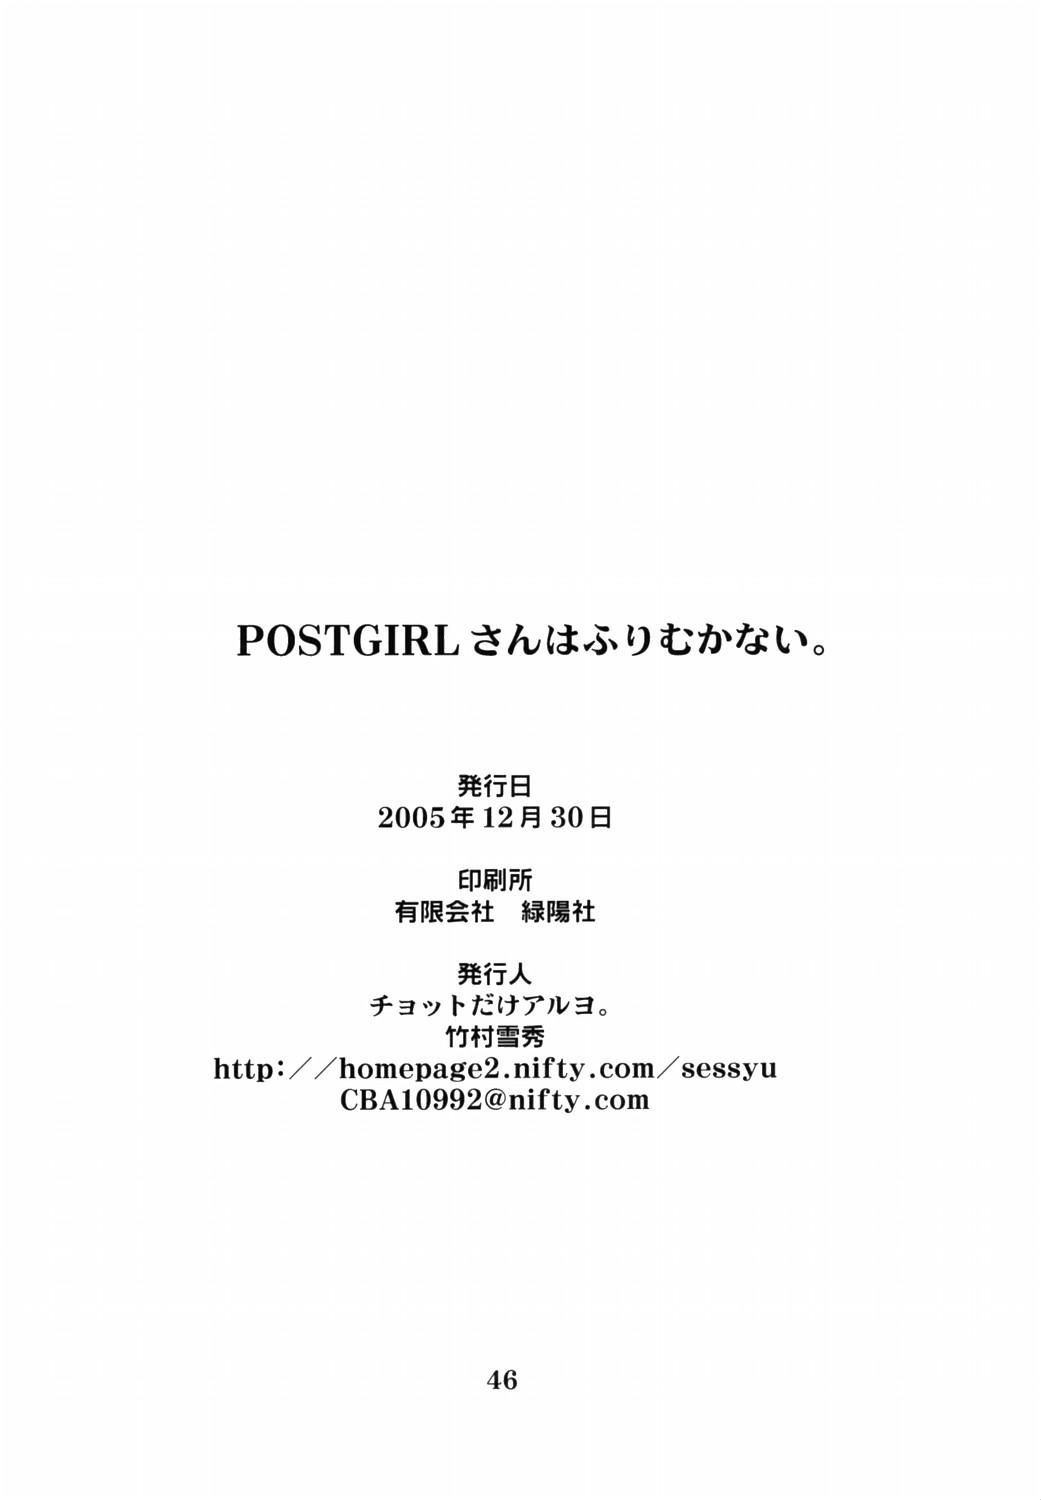 Postgirl-san Wa Furimukanai. | POST GIRL: I Have Nothing, Nothing... But... 44